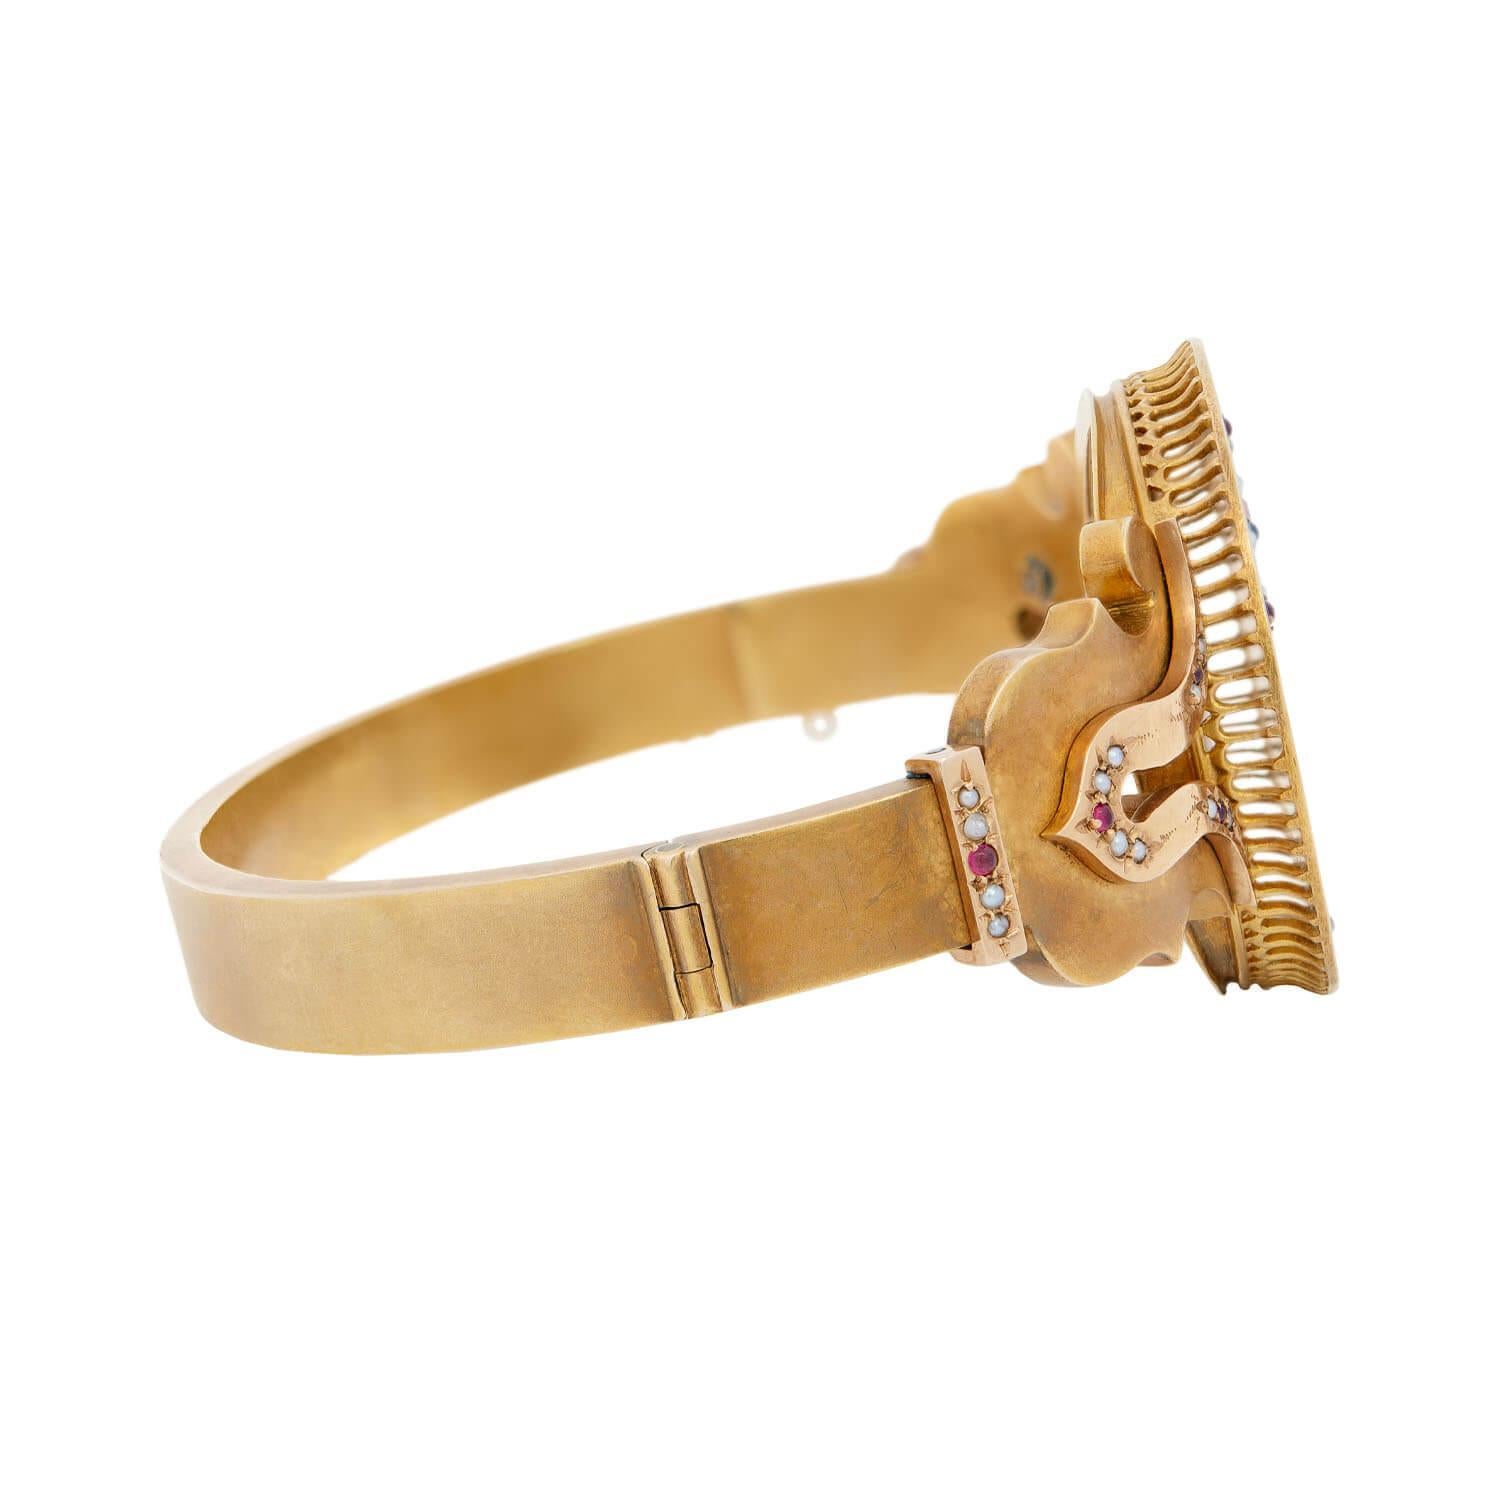 Un bracelet cadenas inhabituel de l'époque victorienne (ca1880) ! Cet élégant bracelet est en or jaune vibrant de 18 carats et présente une pièce centrale circulaire sur le devant, ornée d'émaux et de gravures complexes. La pièce centrale est ornée